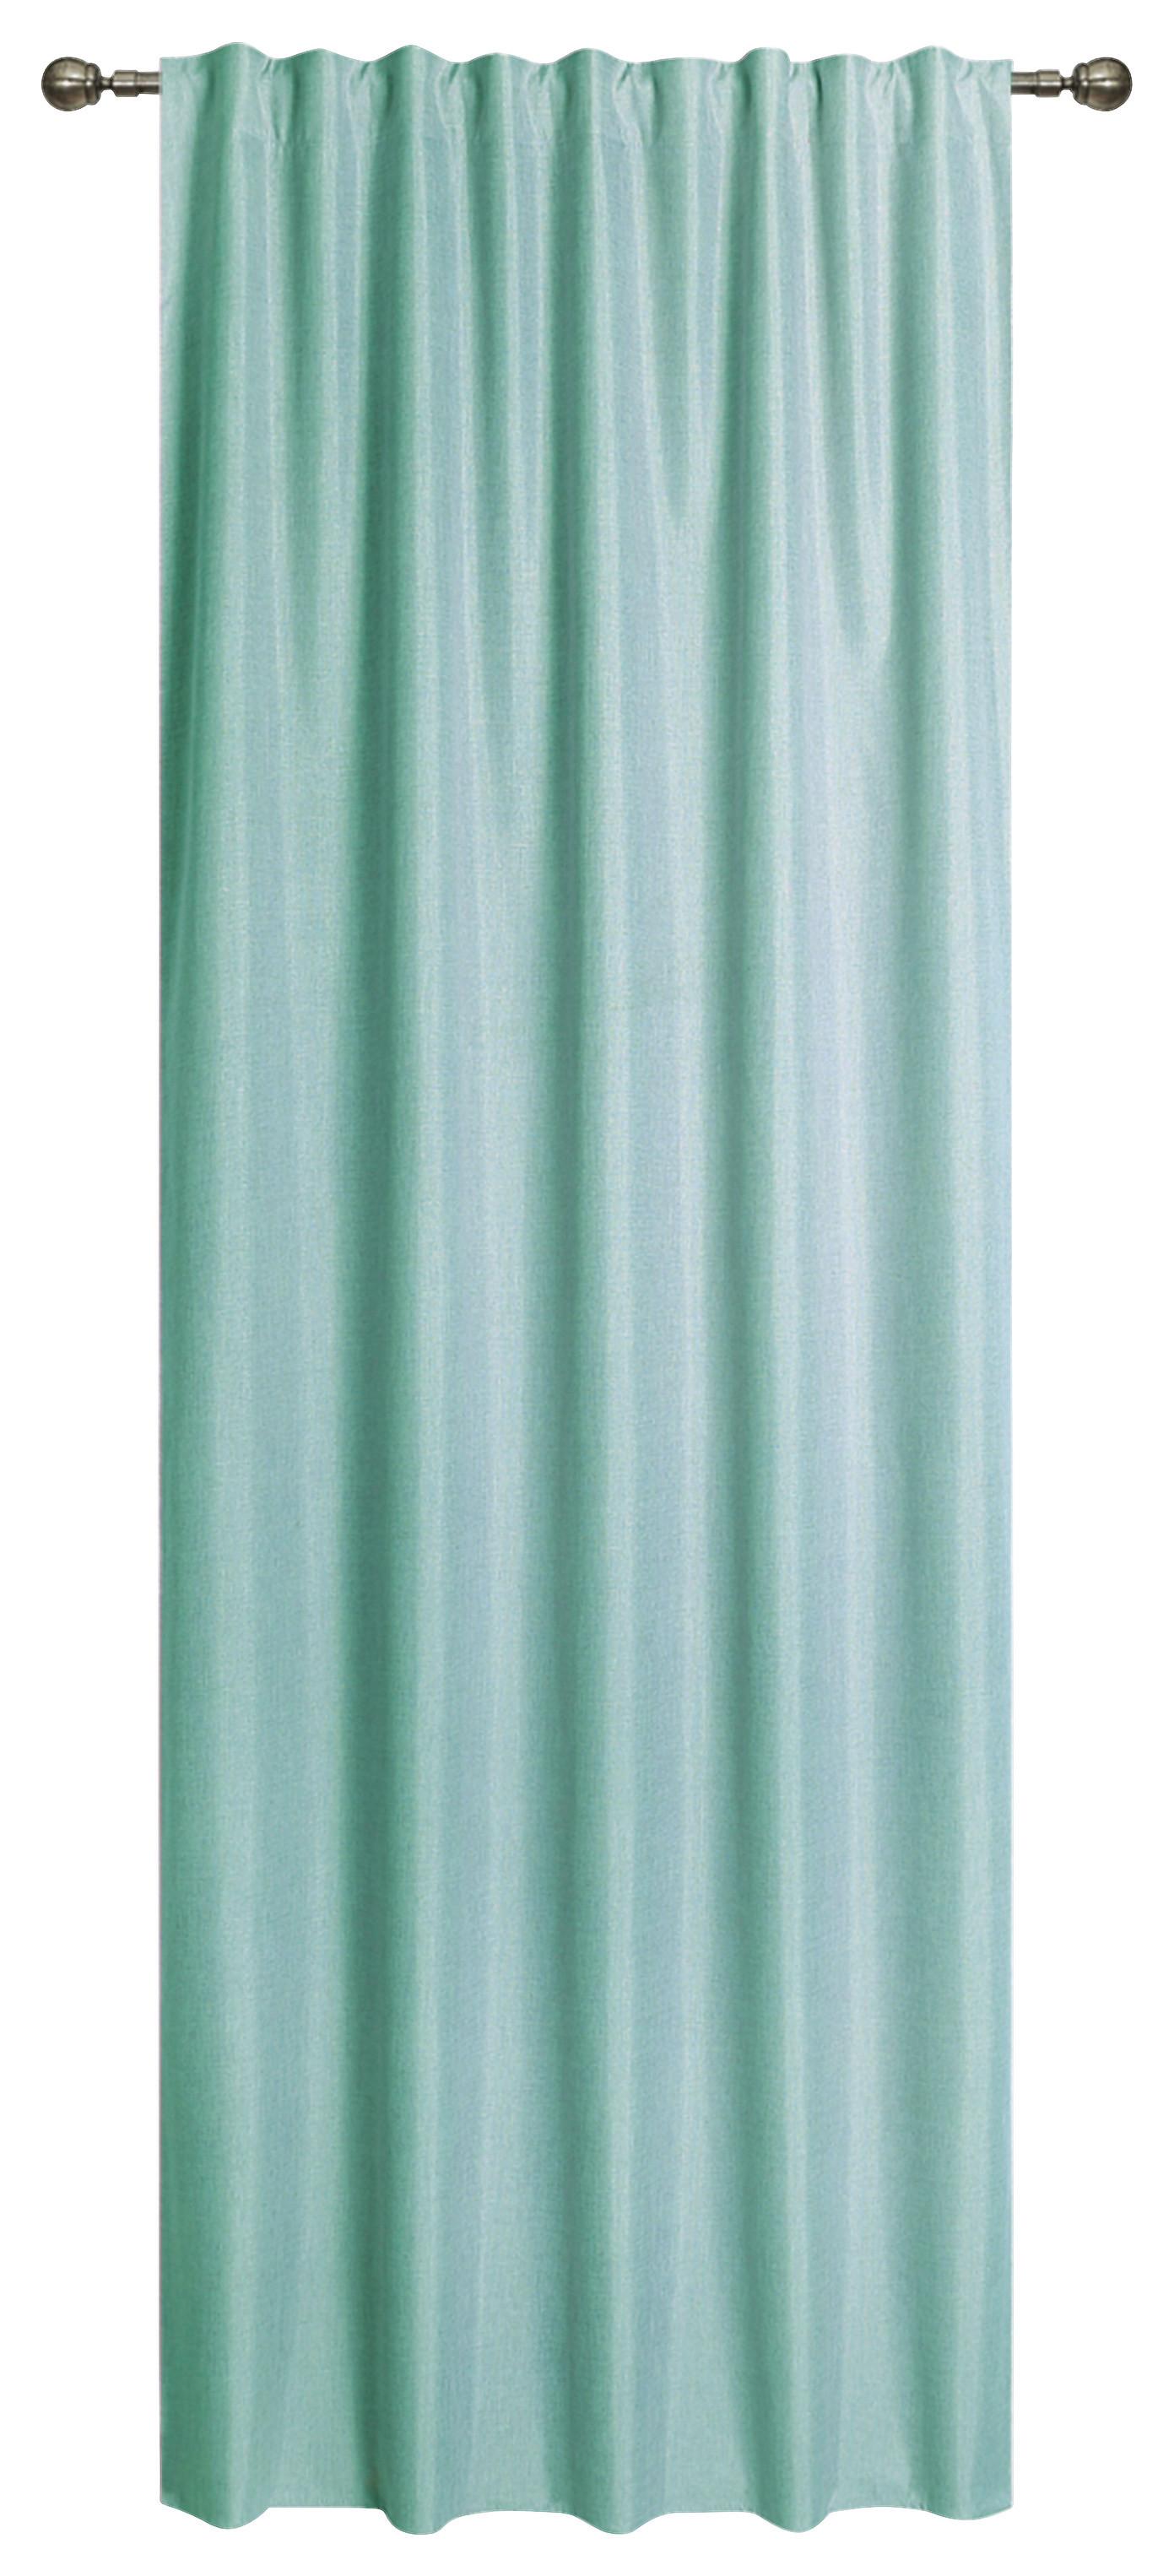 Vorhang mit Band Ohio 140x245 cm Mintgrün - Mintgrün, ROMANTIK / LANDHAUS, Textil (140/245cm) - James Wood